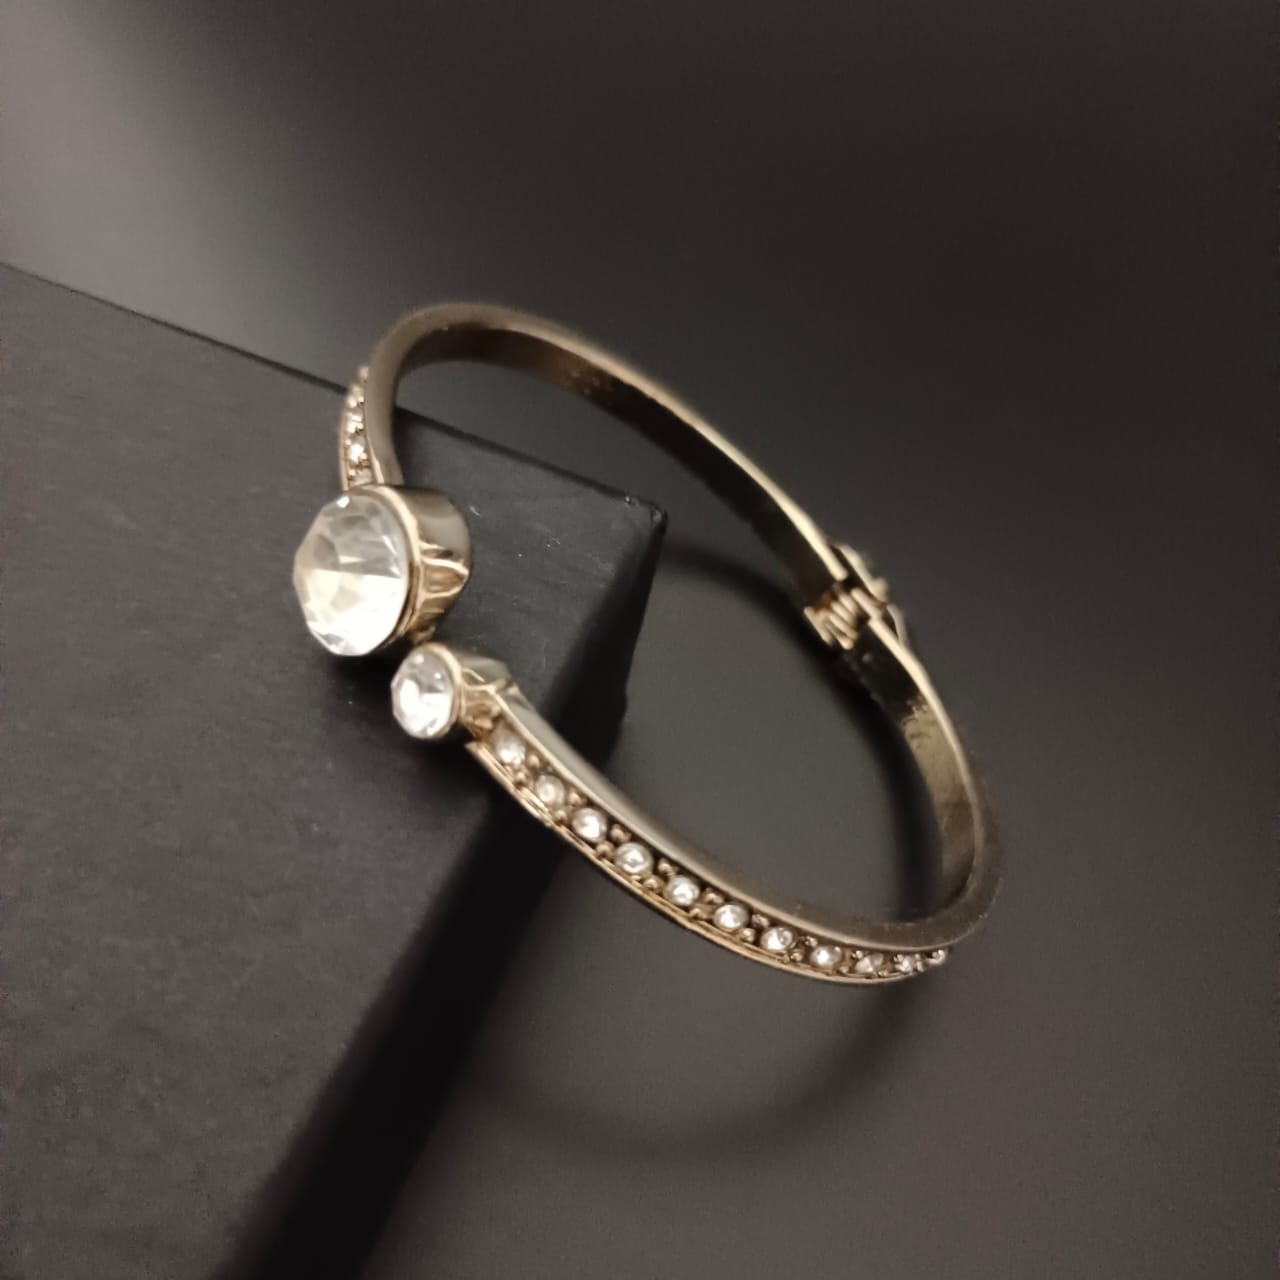 New Golden Diamond  Kada Bracelet For Women and Girl-Jack Marc